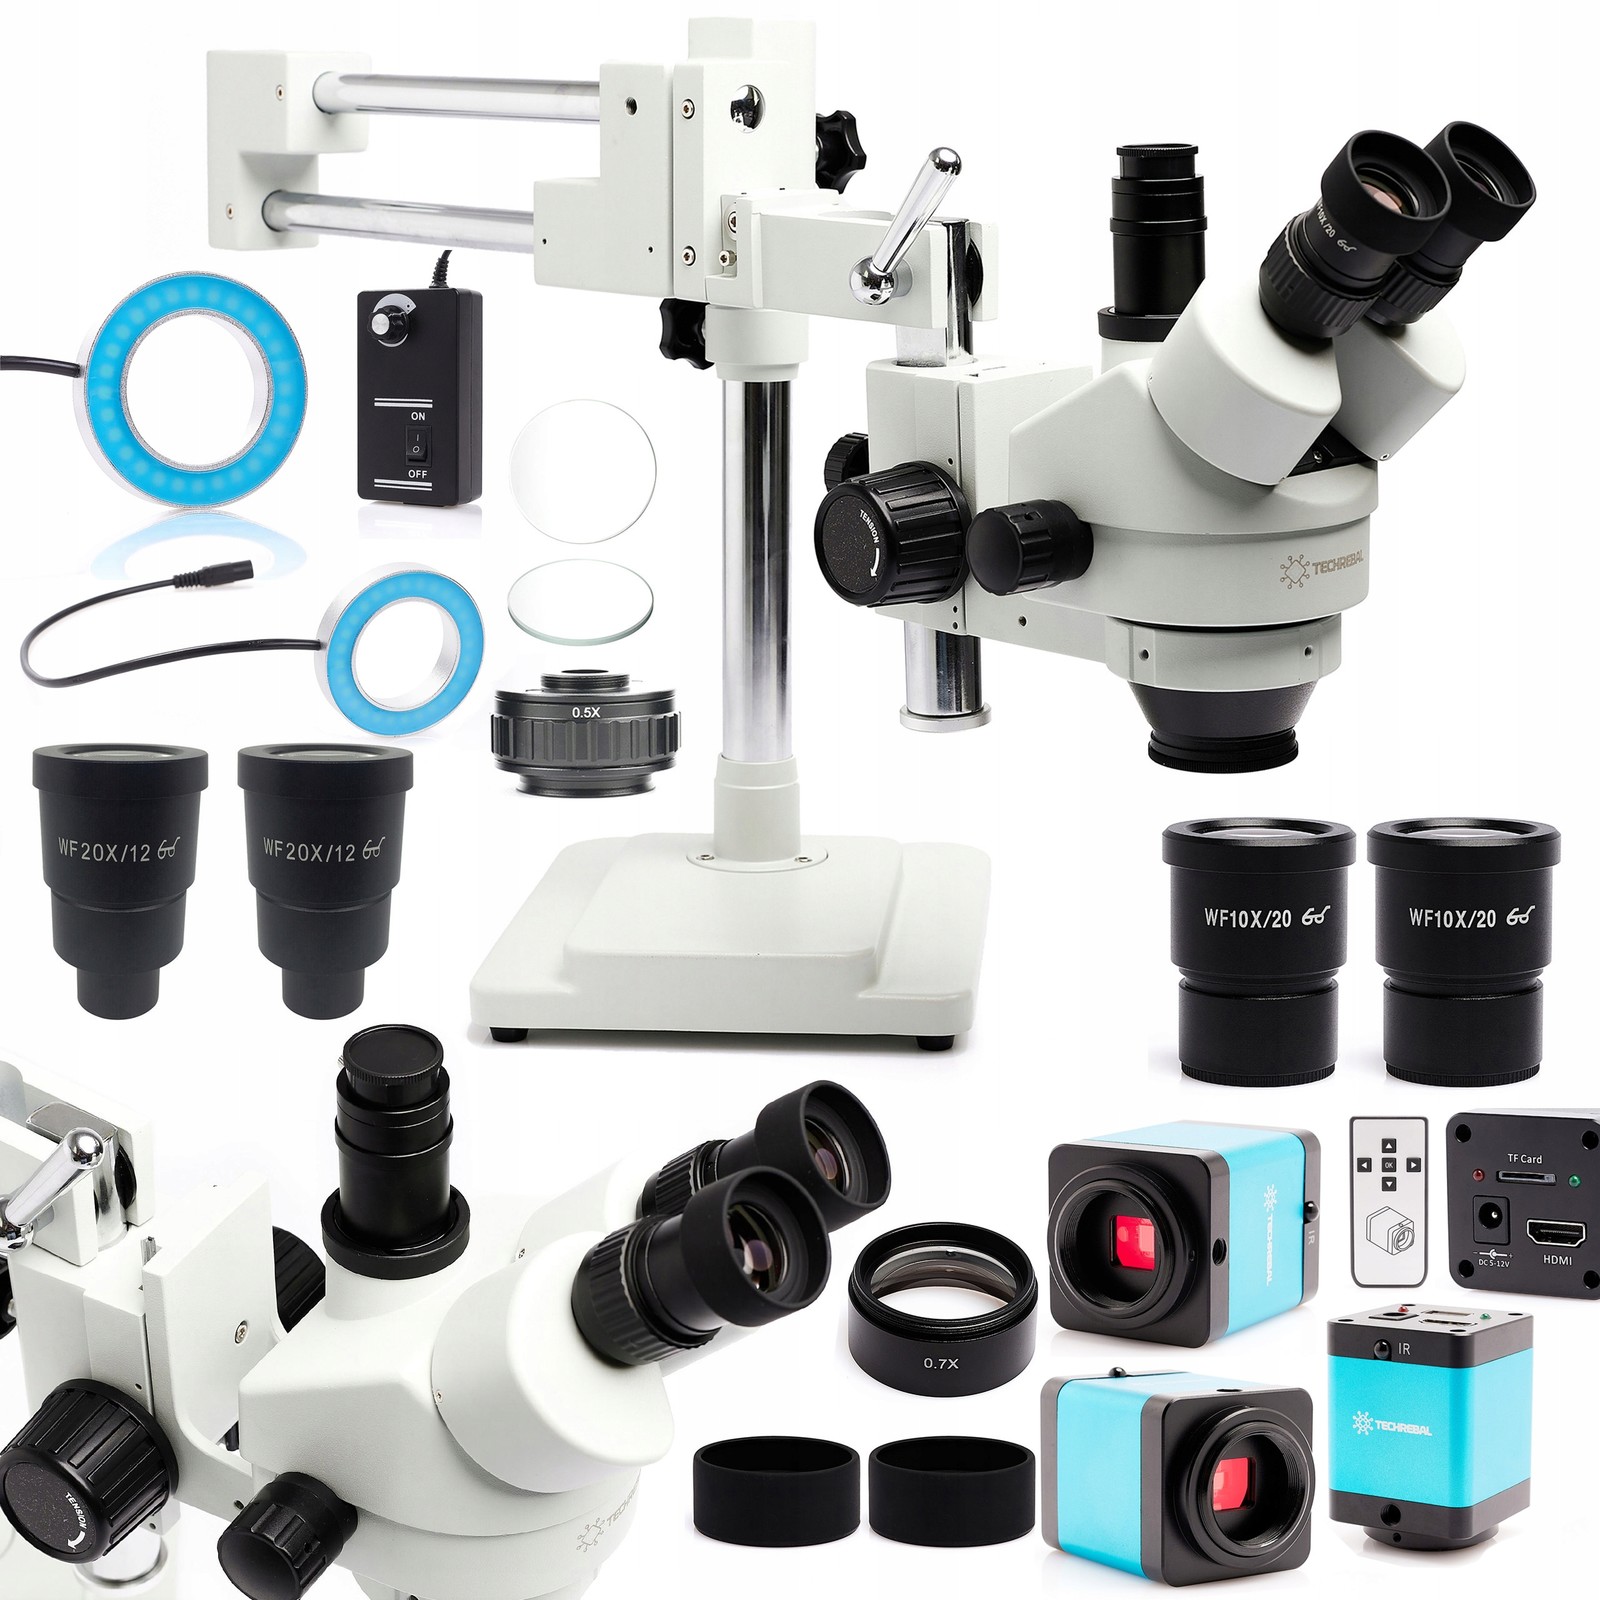 Optický Stereoskopický Mikroskop 10HW Kamera 12MP Osvětlení Objektiv 0,7X